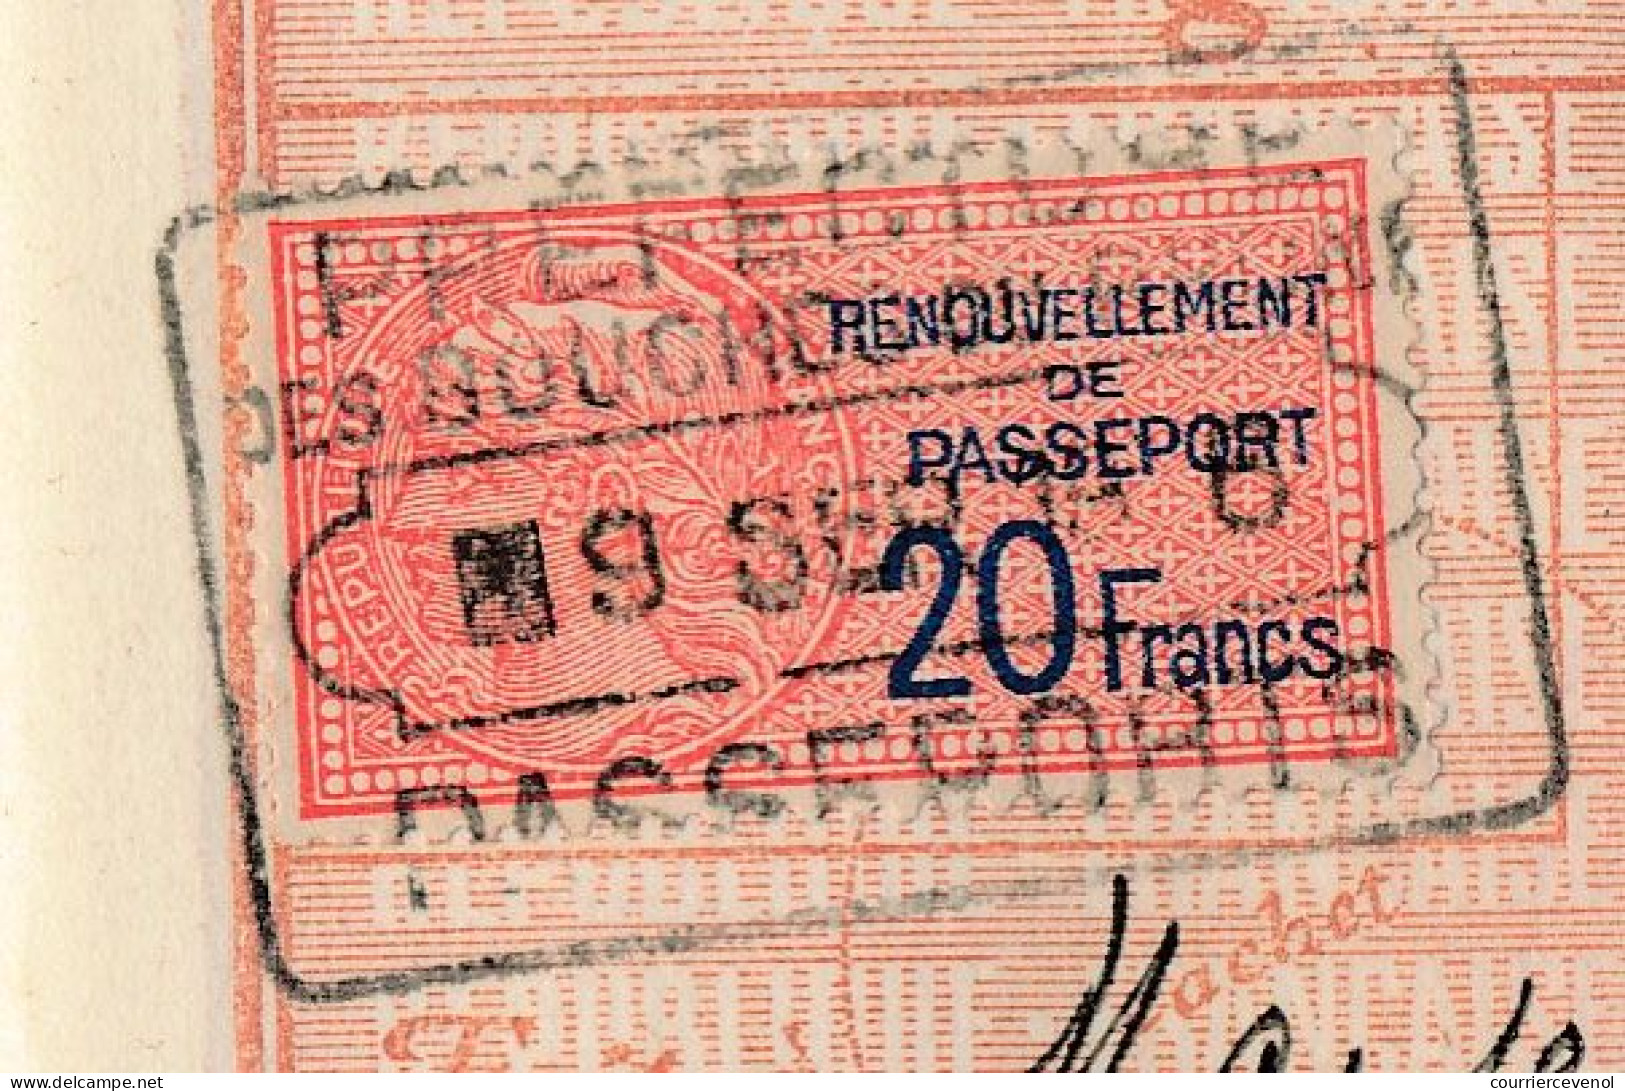 FRANCE - Passeport à l'étranger 20F - Marseille 1935 + 2 x 20F renouvellement 1936 et 1937